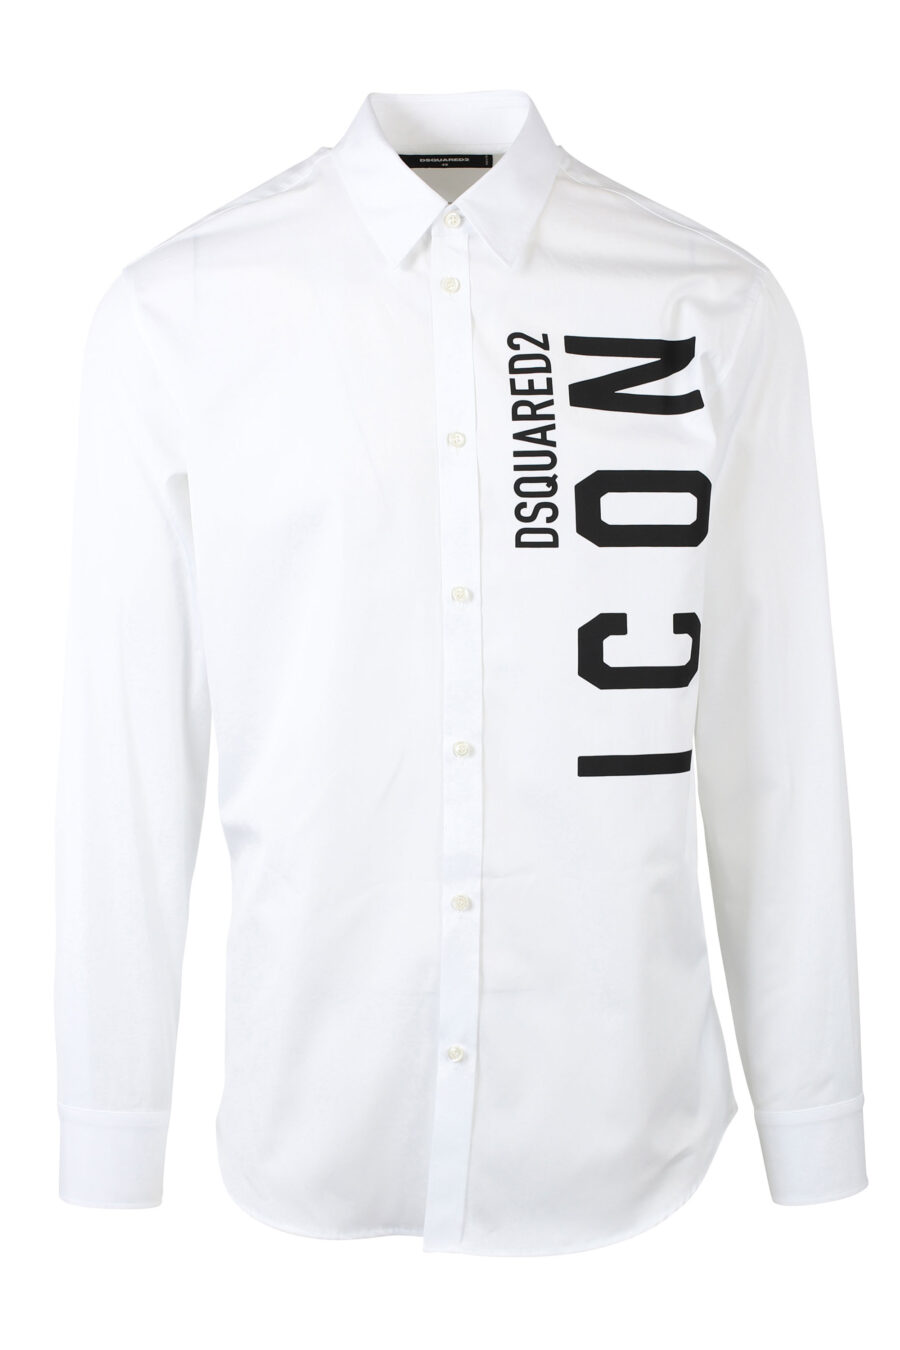 Camisa blanca con maxilogo doble logo "icon" vertical - IMG 0784